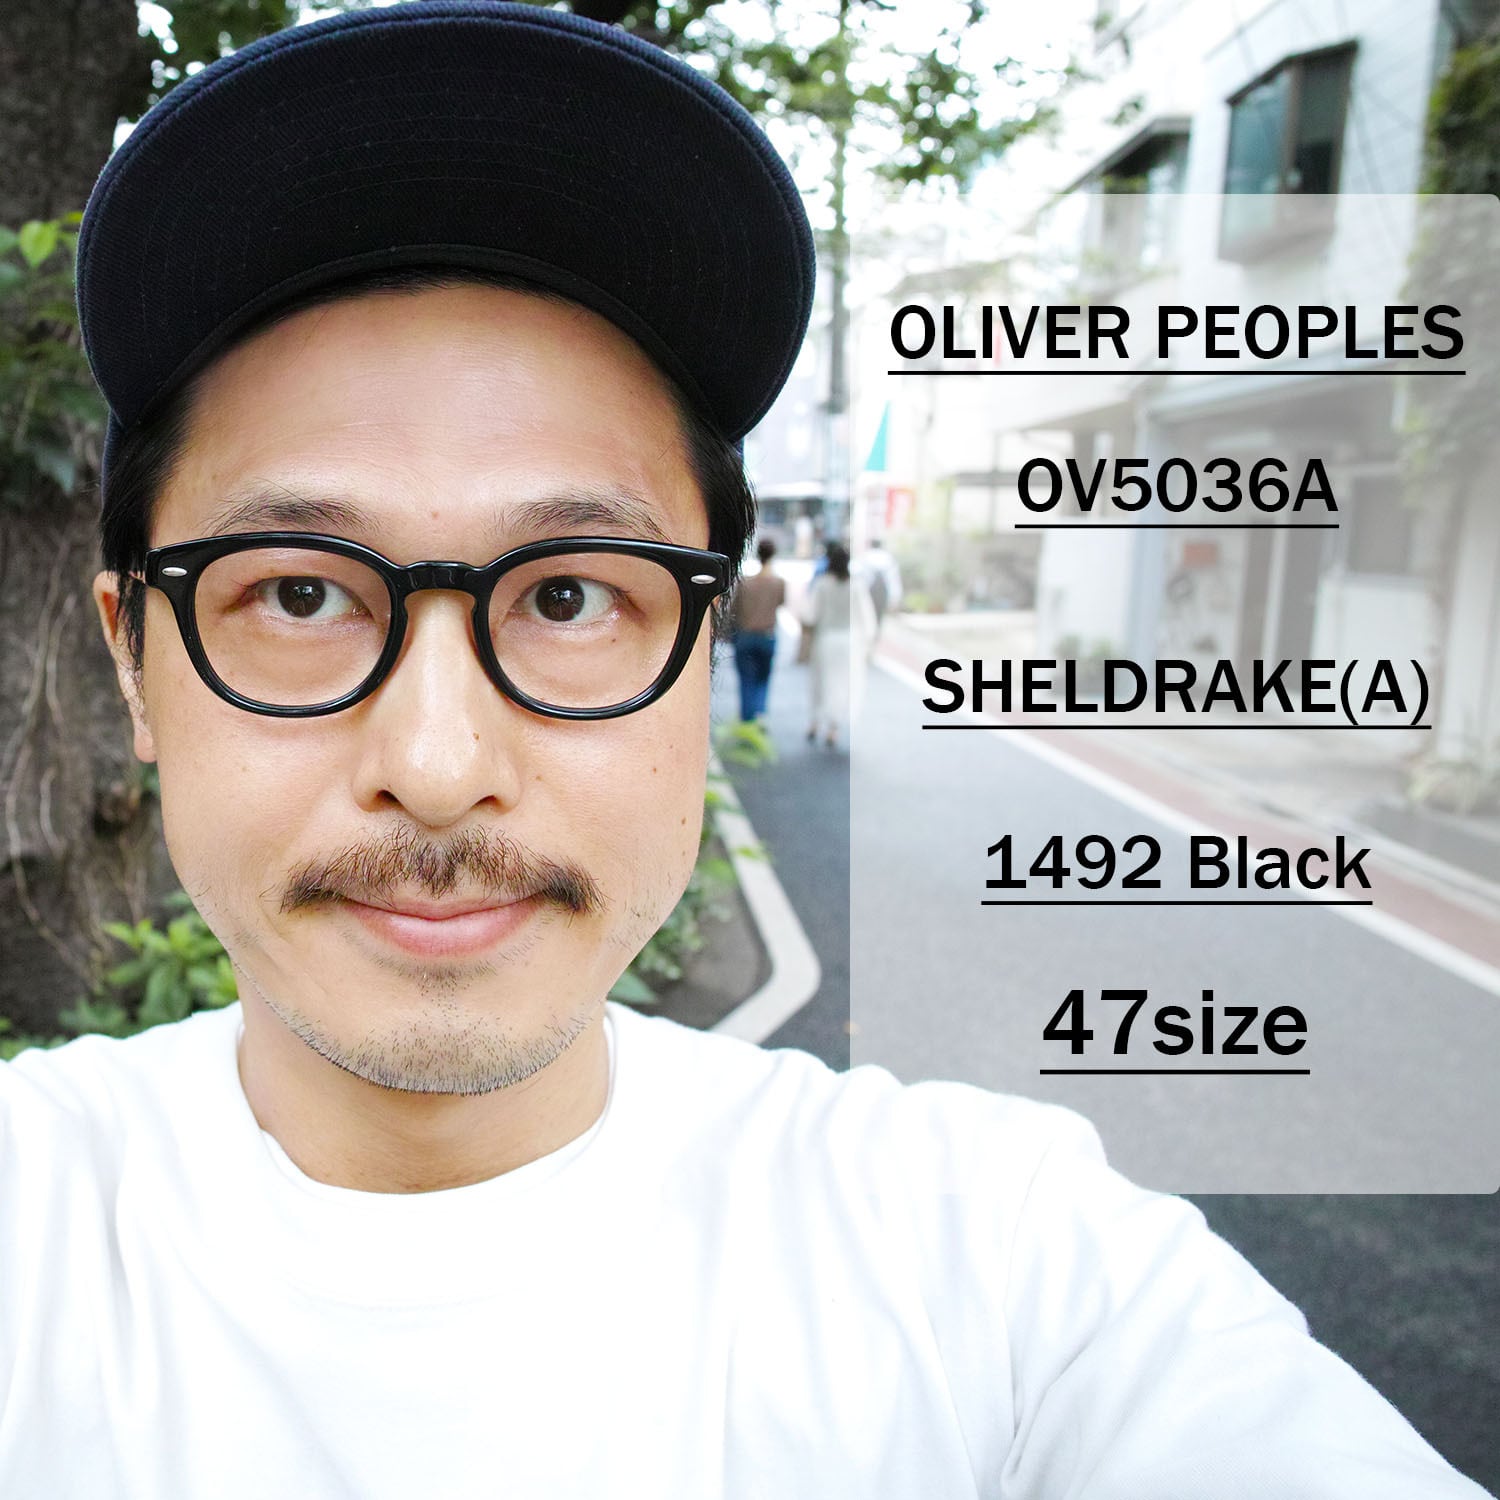 OLIVER PEOPLES / SHELDRAKE シェルドレイク - OV5036A - / 1492 Black ...